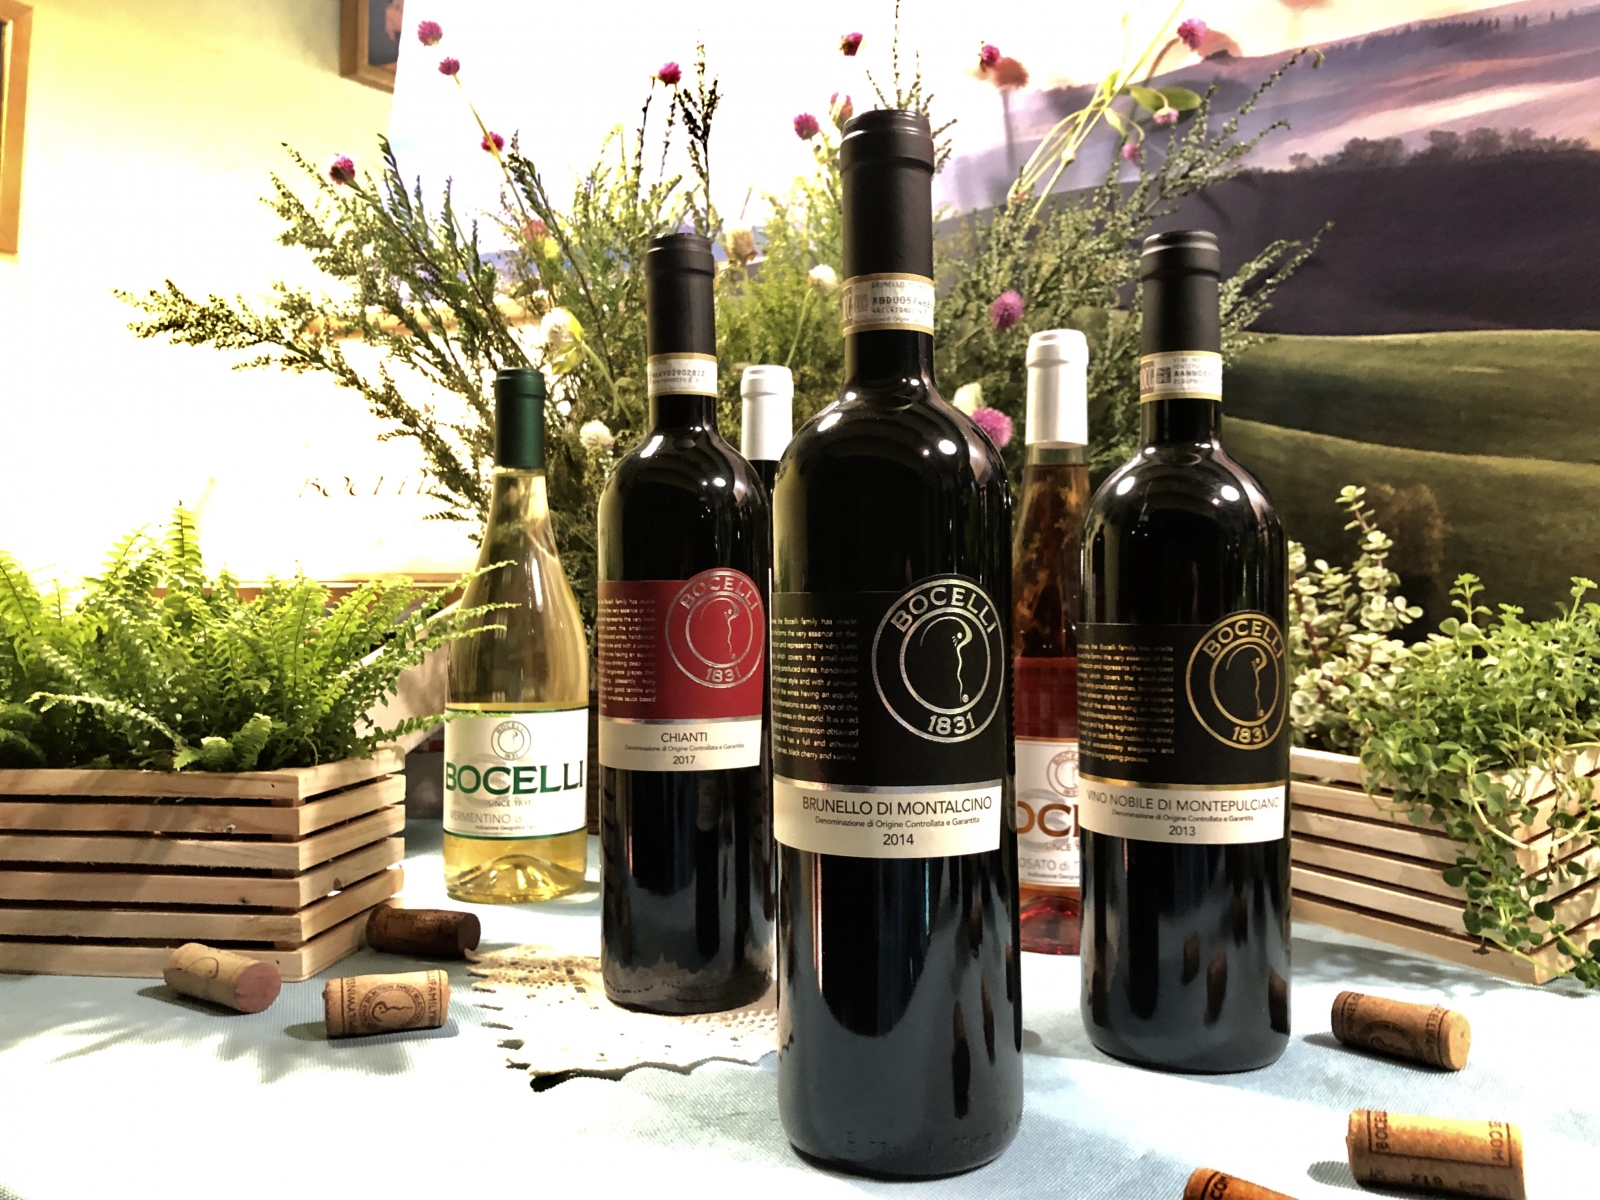 布魯內洛蒙塔奇諾紅酒 (Brunello di Montalcino DOCG, 2013，圖中)，來自義大利國寶級產區、義大利葡萄酒代表「3B」之一。100% Sangiovese葡萄釀製，波伽利家族較法令規定更嚴謹，42個月法國橡木桶陳加上18個月瓶陳，最快在採收5年後才上市。2015年尚未上市，2012年全數為特定對象收購，今年上市為2014年份，台灣地區只分得72支。